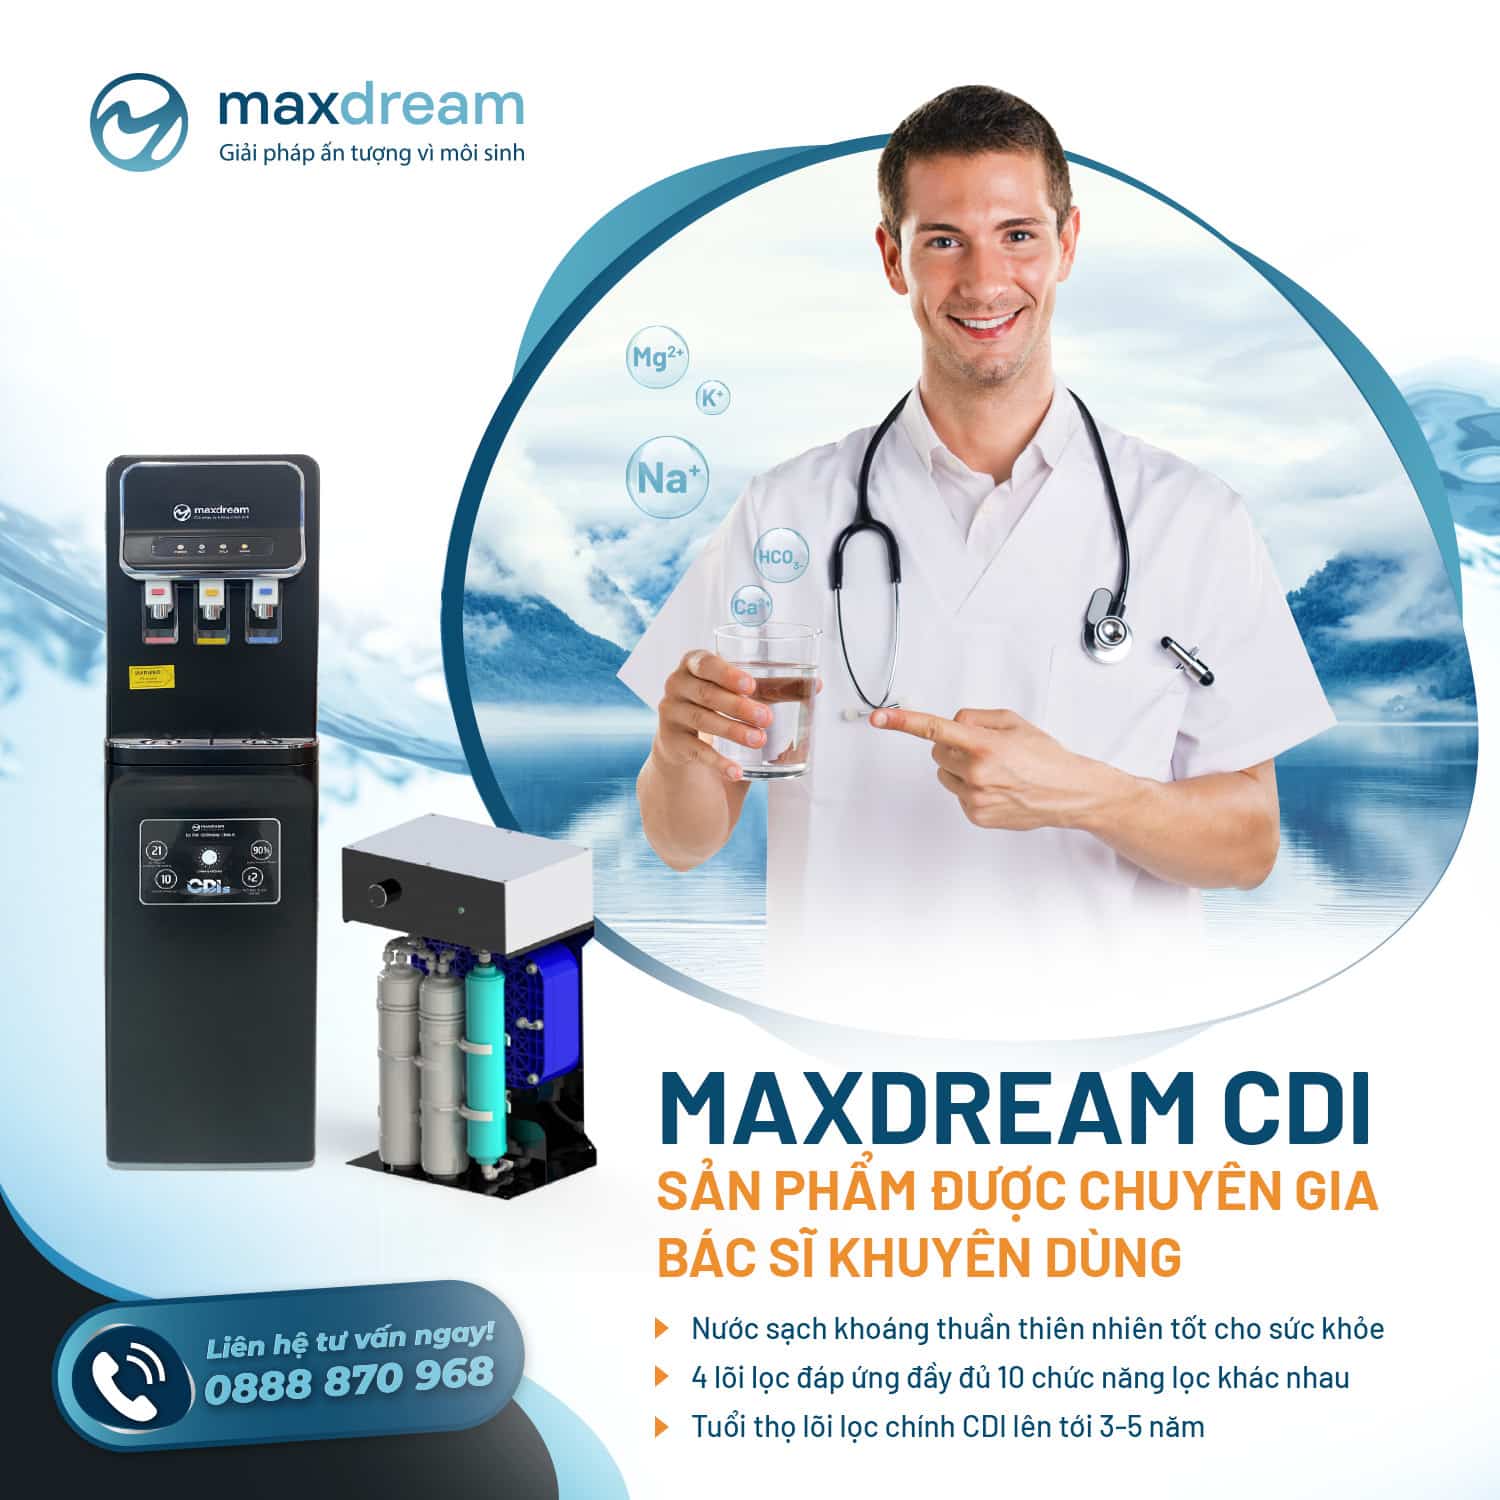 Máy lọc nước của Maxdream được các chuyên gia khuyên dùng